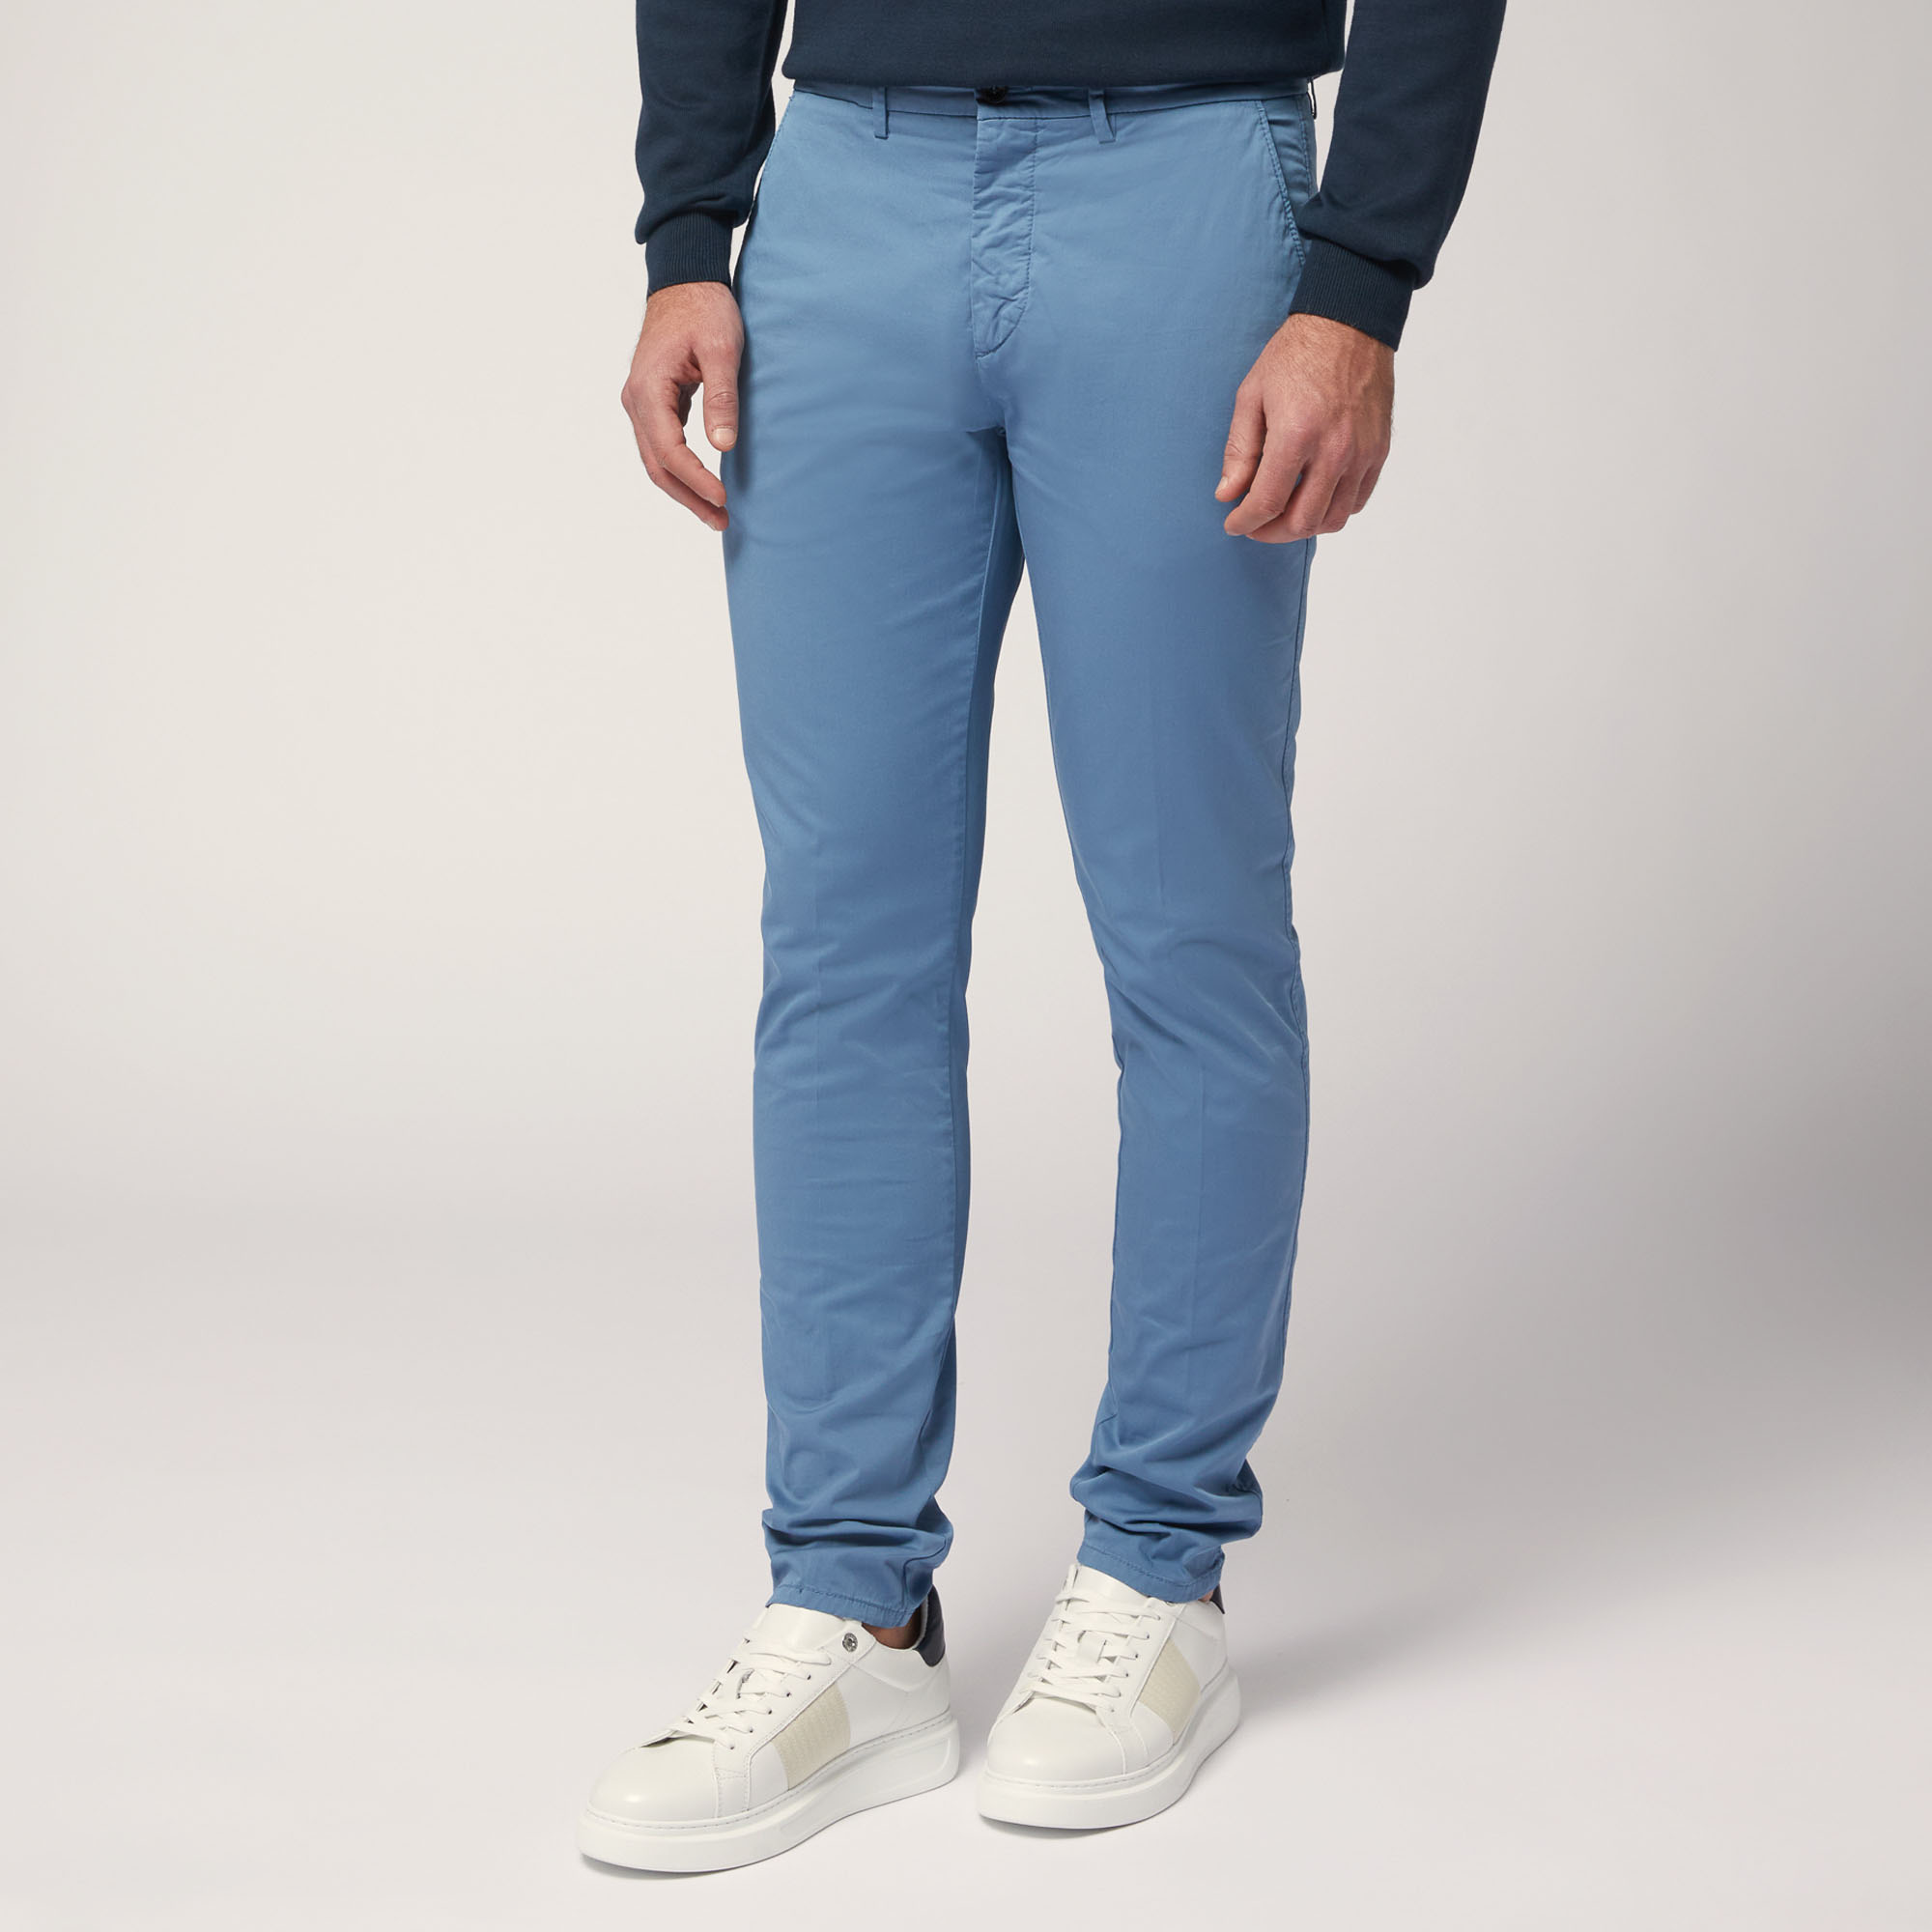 Pantaloni Chino Narrow Fit, Blue, large